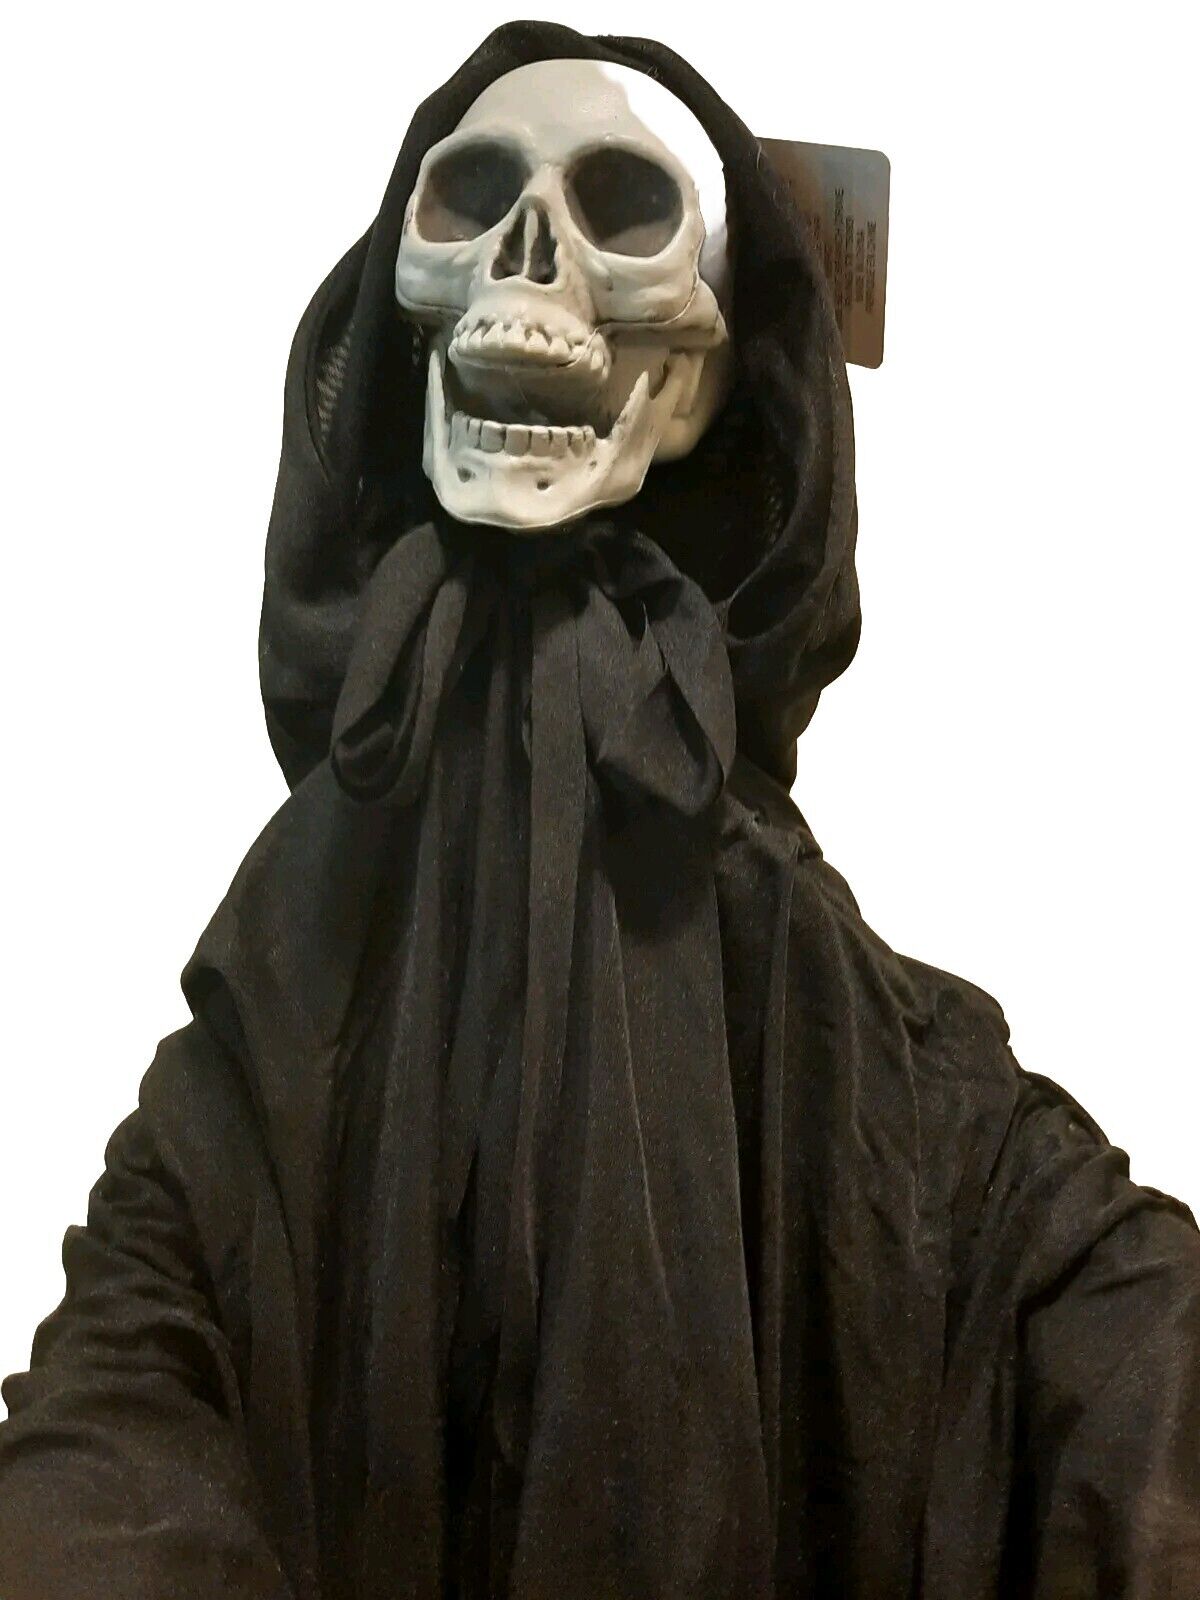 Halloween Skeleton Black Reaper 3 FT BY Ashland. New